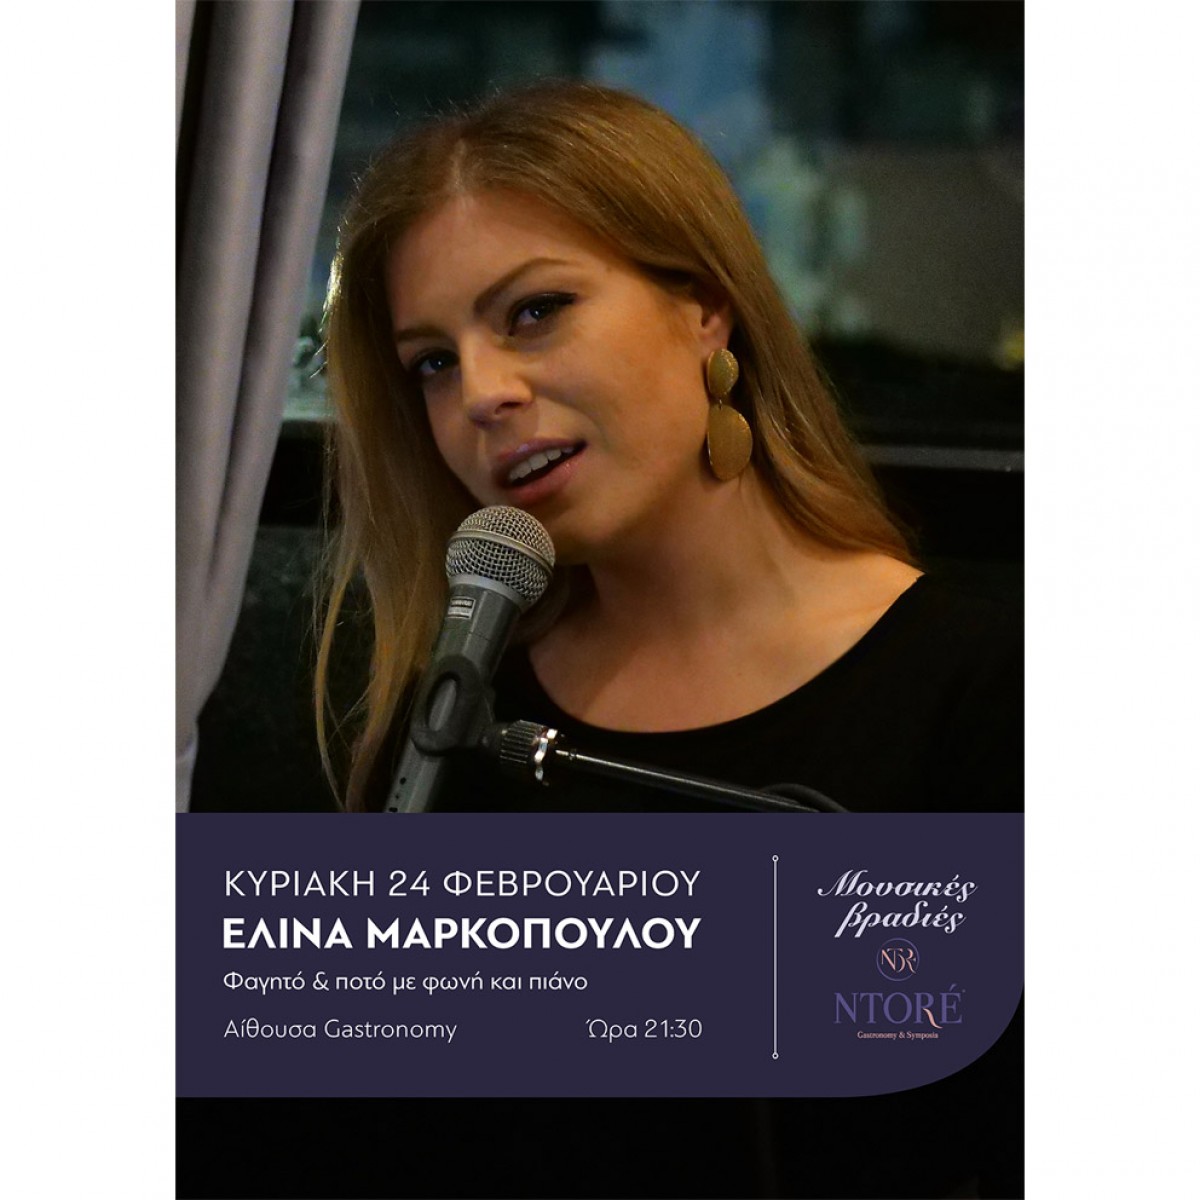 Φαγητό και ποτό με την Ελίνα Μαρκοπούλου στη φωνή και το πιάνο, Κυριακή 24 Φεβρουαρίου, 21:30